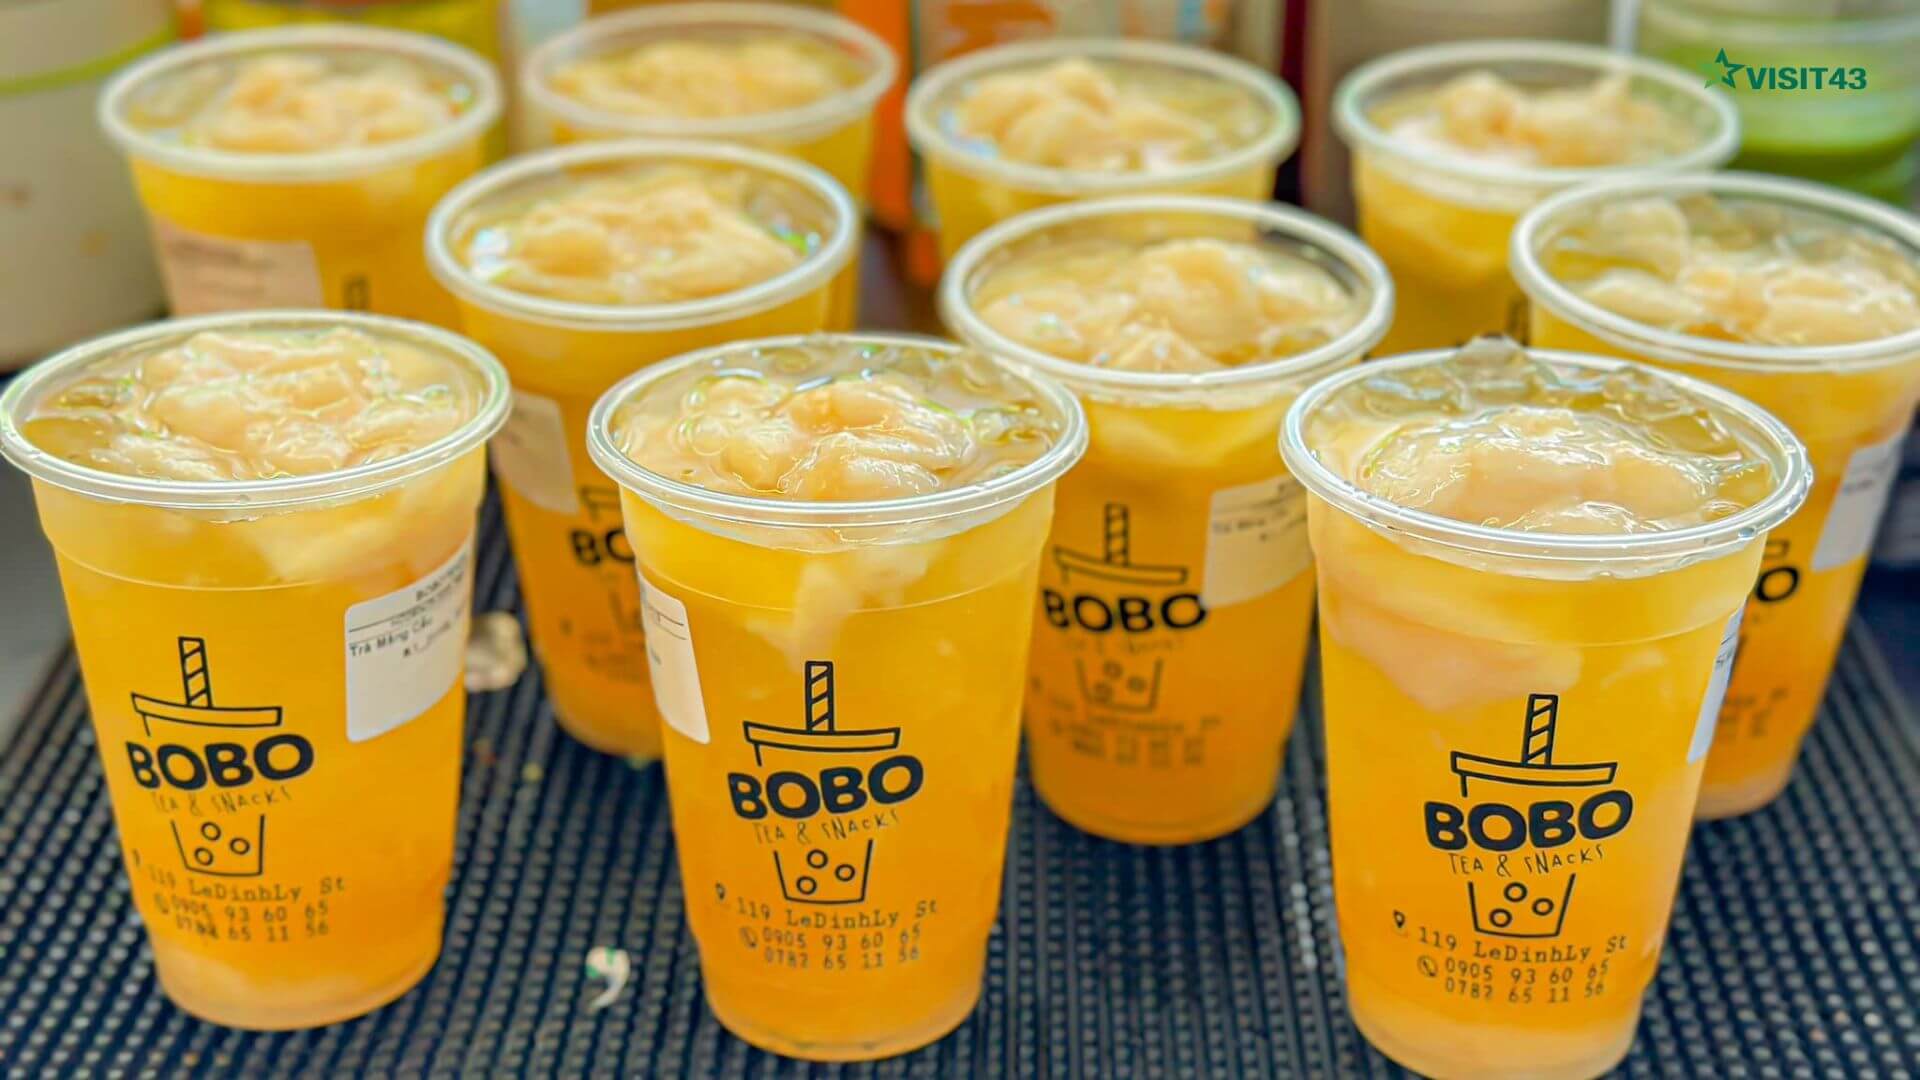 Bobo Tea - Địa chỉ bán trà mãng cầu Đà Nẵng hấp dẫn